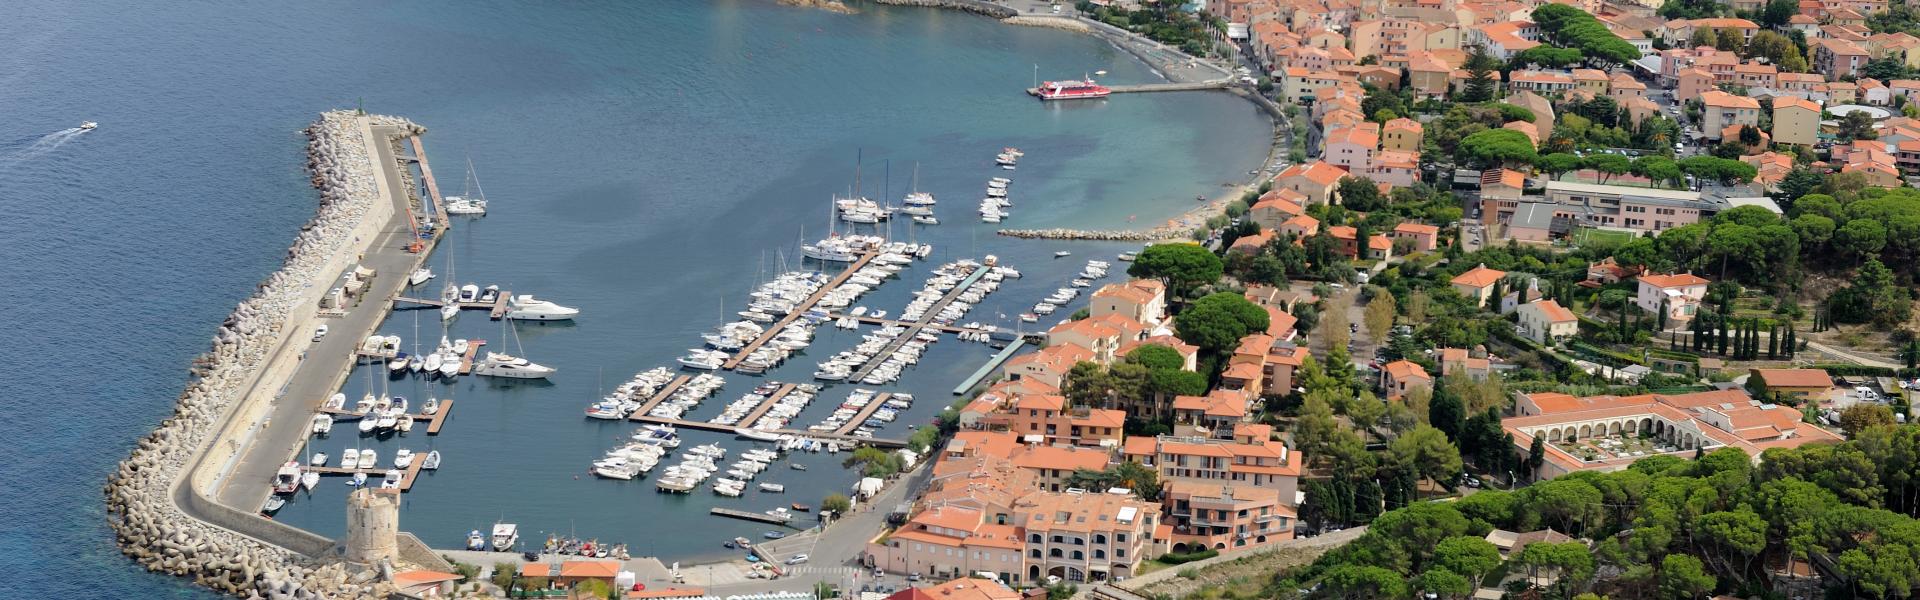 Marciana Marina Scenic View